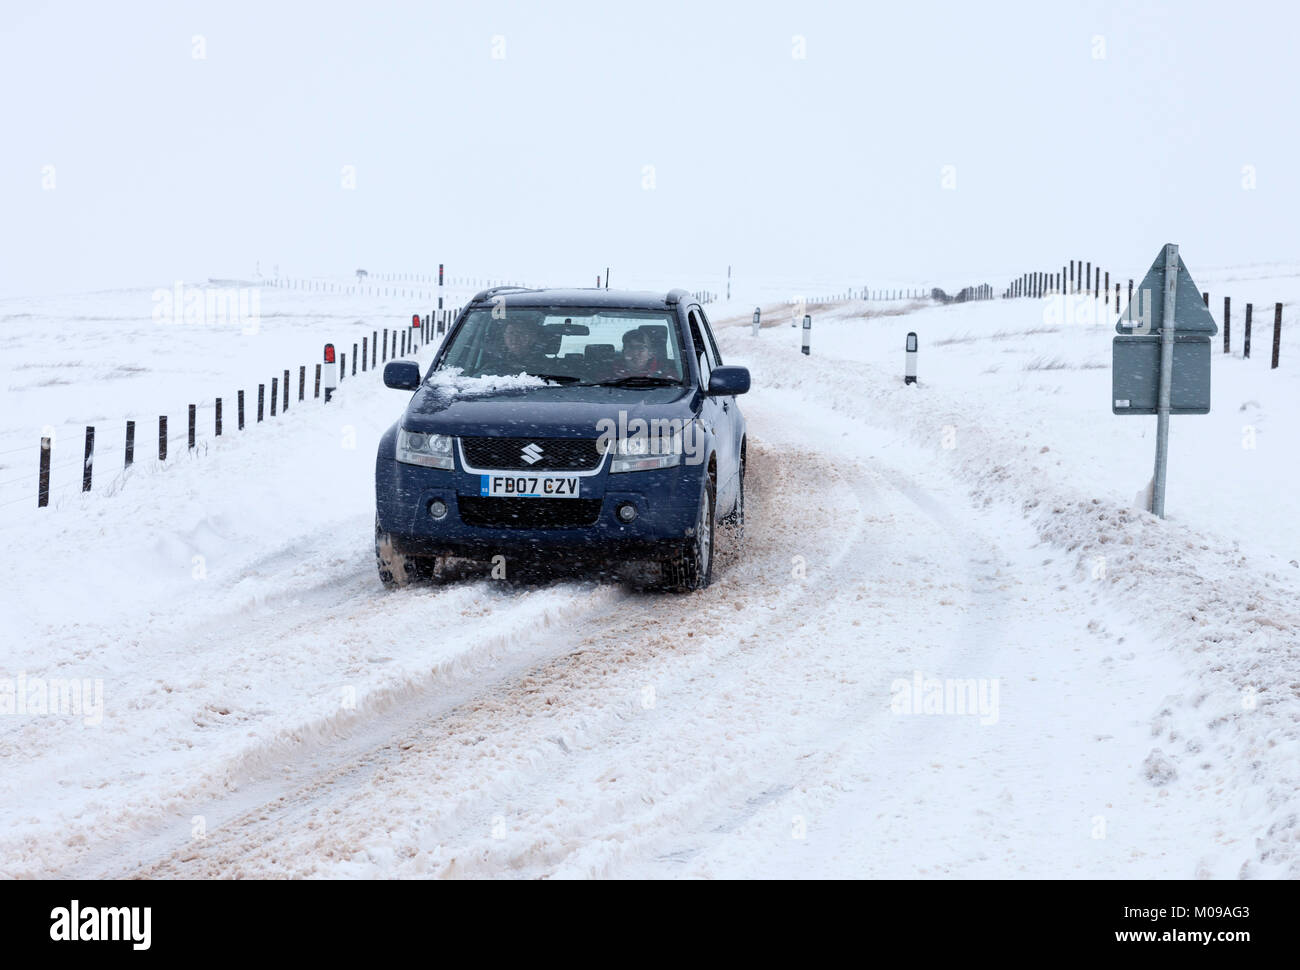 B6277, Teesdale, Cumbria/Condado de Durham frontera UK. Viernes, 19 de enero de 2018. El clima del Reino Unido. Nieve y más nieve a la deriva sigue afectando a algunas de las carreteras de alto nivel en el norte de Inglaterra esta tarde. Las condiciones de conducción en el B6277 entre Middleton en Teesdale y Alston todavía son peligrosos. Crédito: David Forster/Alamy Live News Foto de stock